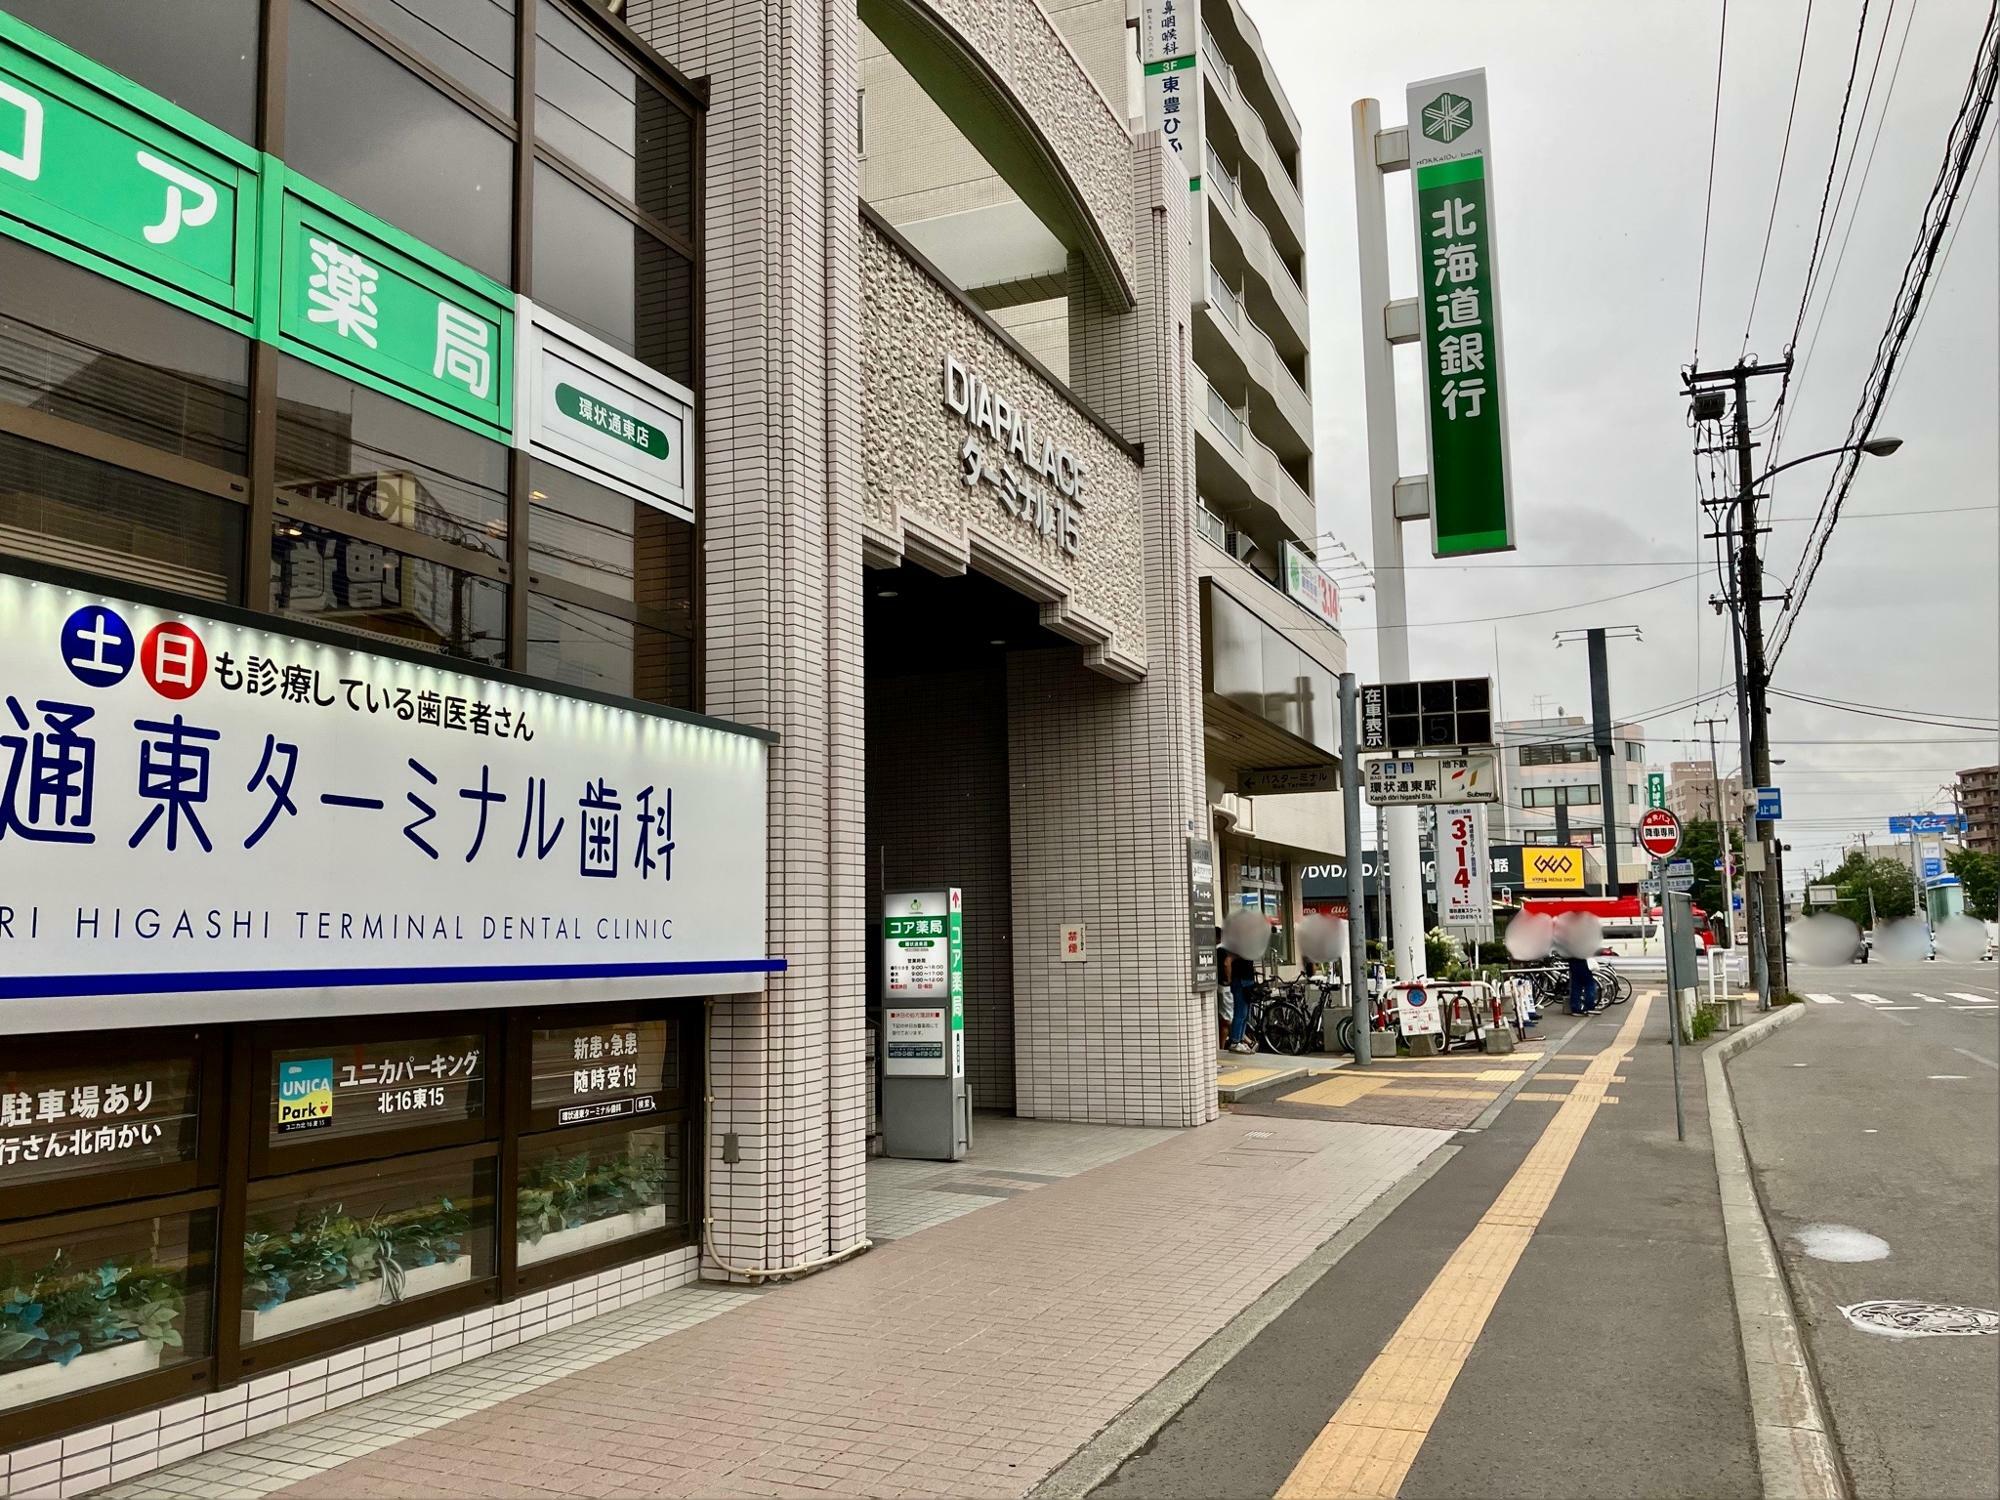 札幌地下鉄東豊線の「環状通東」駅前